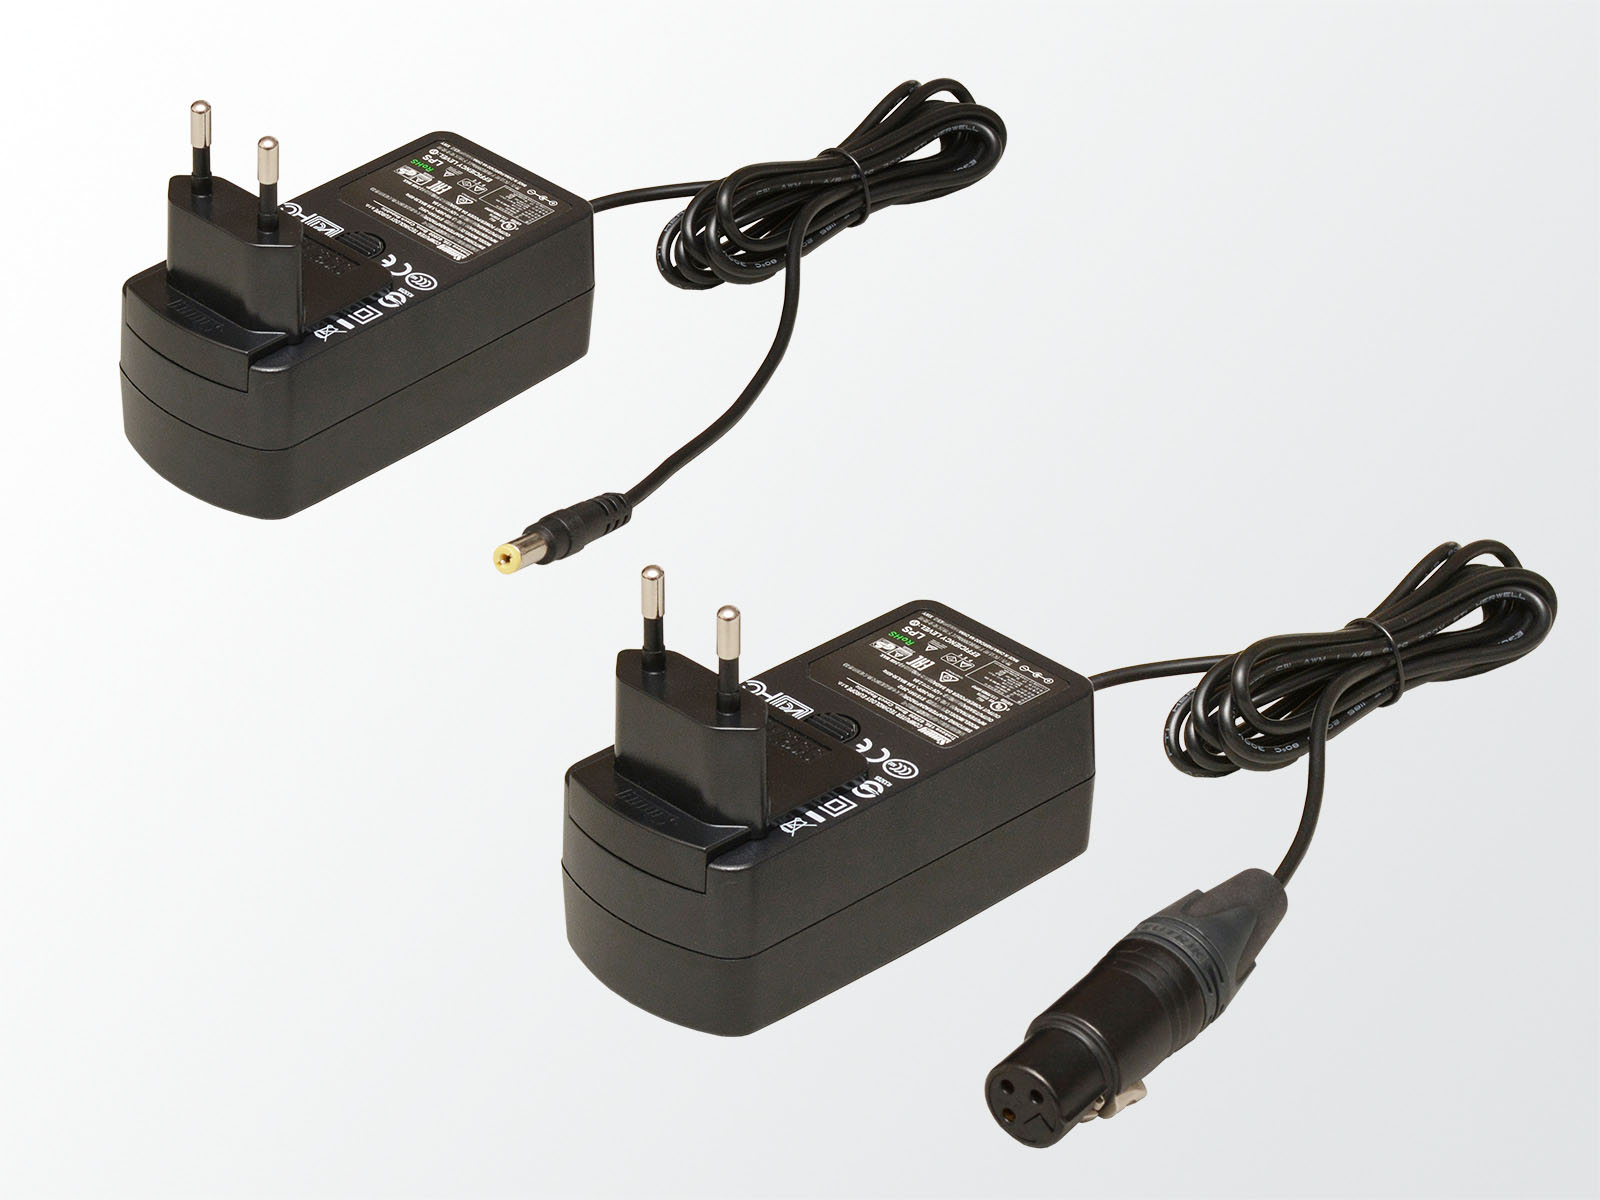 Netzteile mit XLR3 für Standfuß und NV-Stecker für Adapterplatte